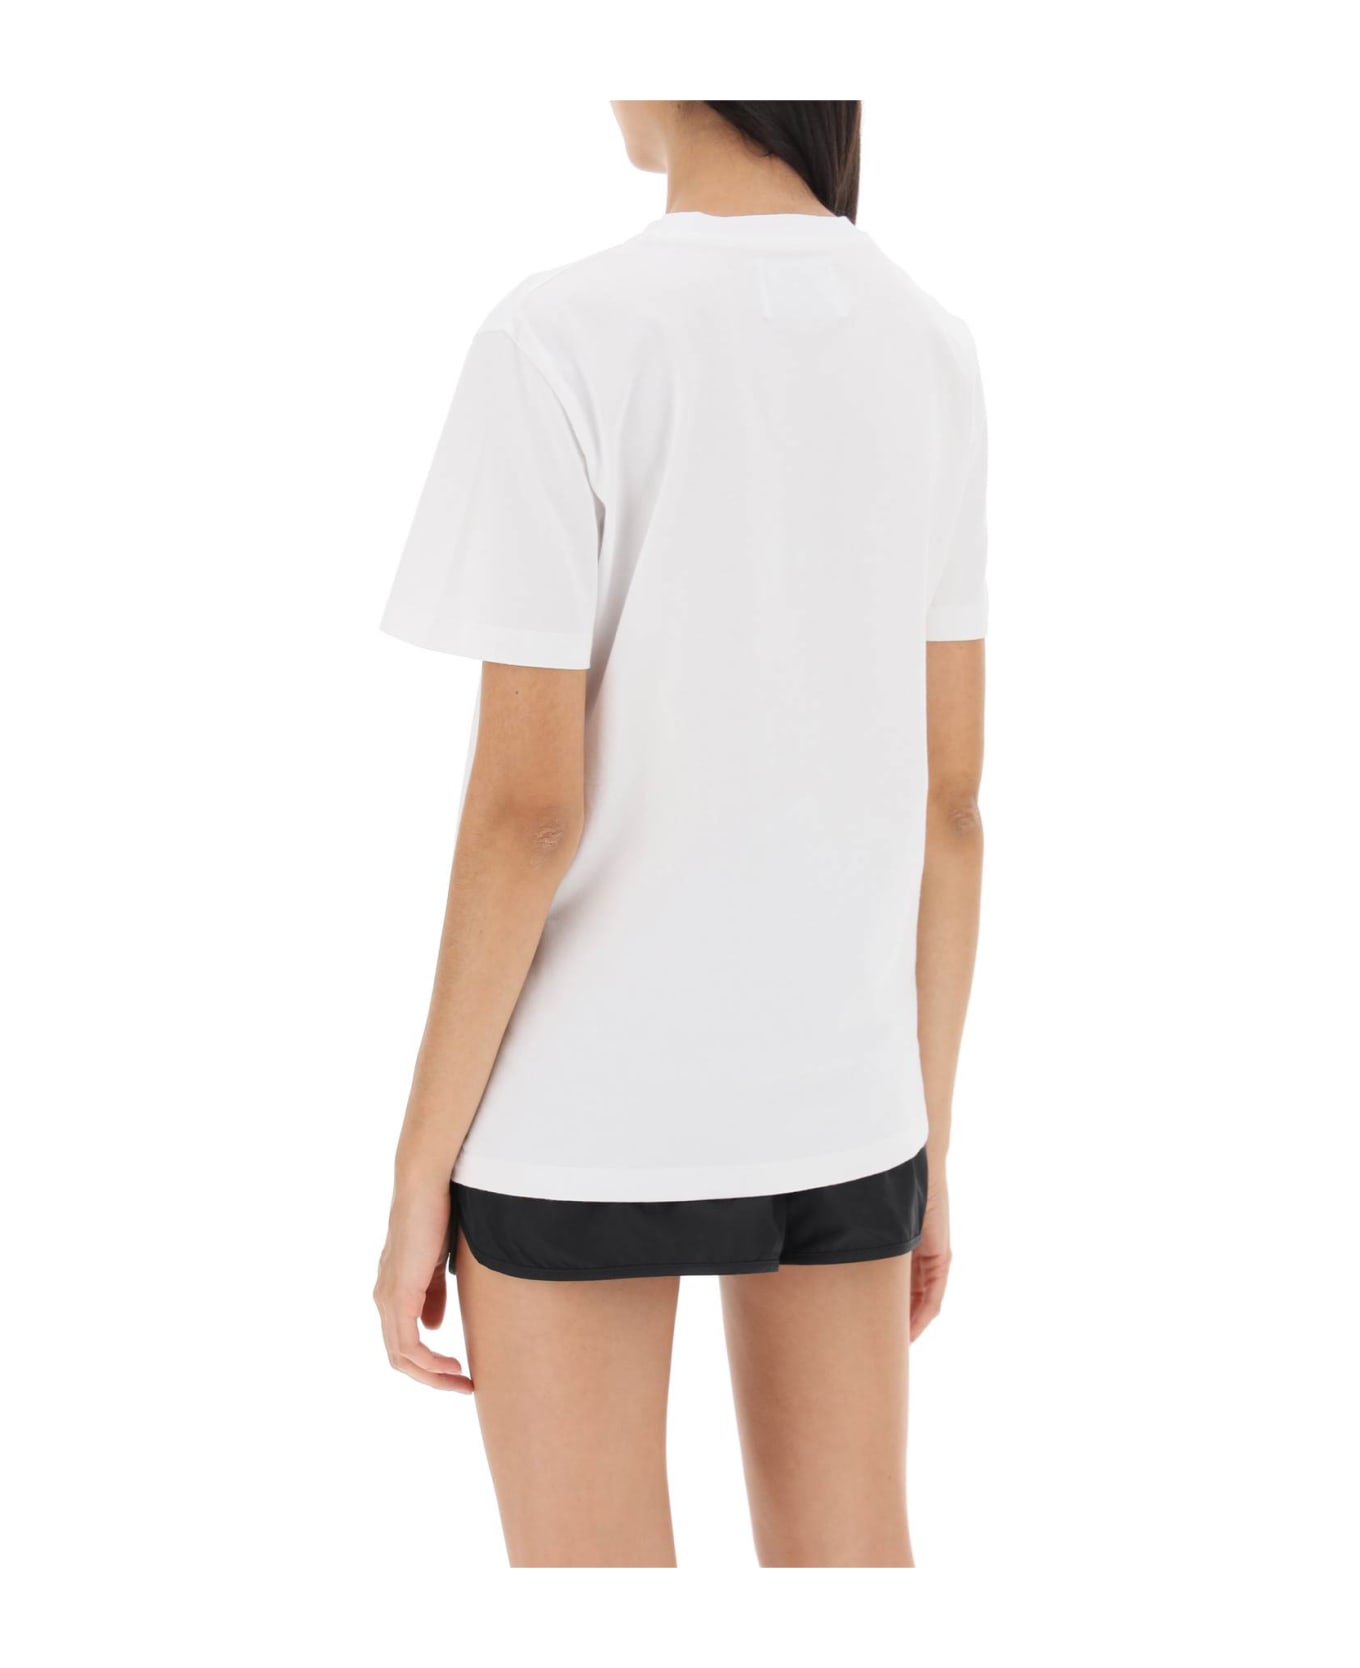 Golden Goose Regular T-shirt With Star Logo - OPTIC WHITE BLACK (Black)